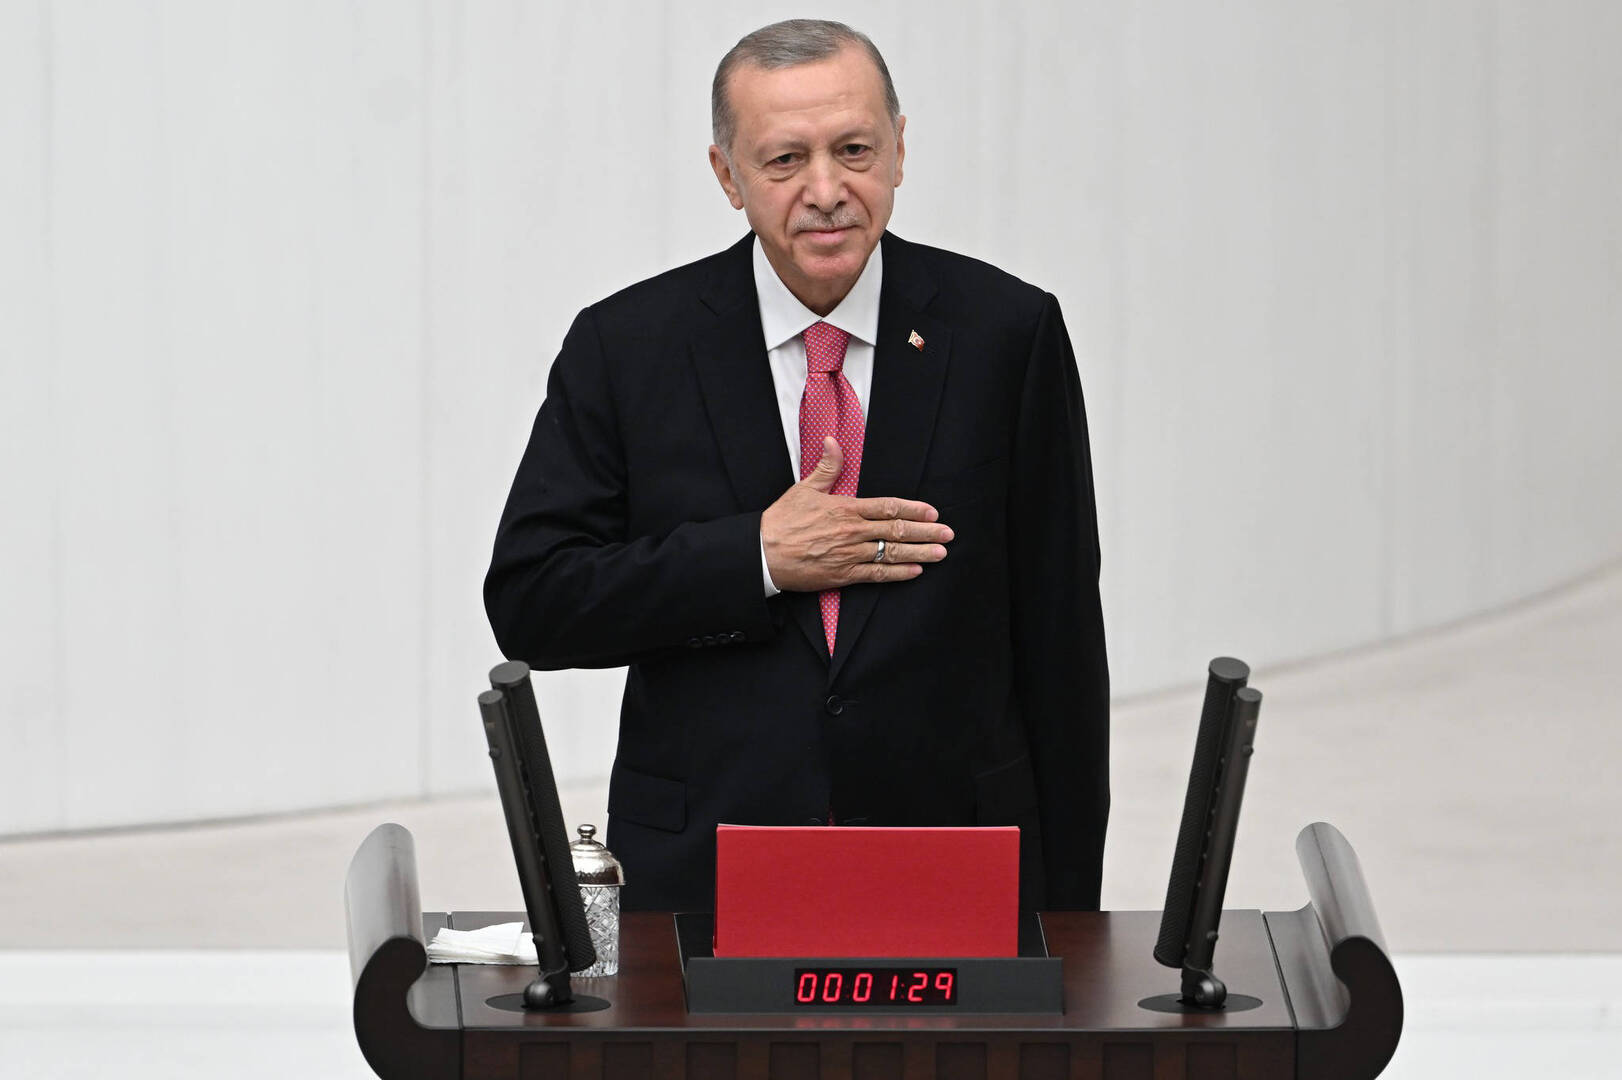 كلمات في قسم أردوغان تثير الجدل عبر مواقع التواصل (فيديو)